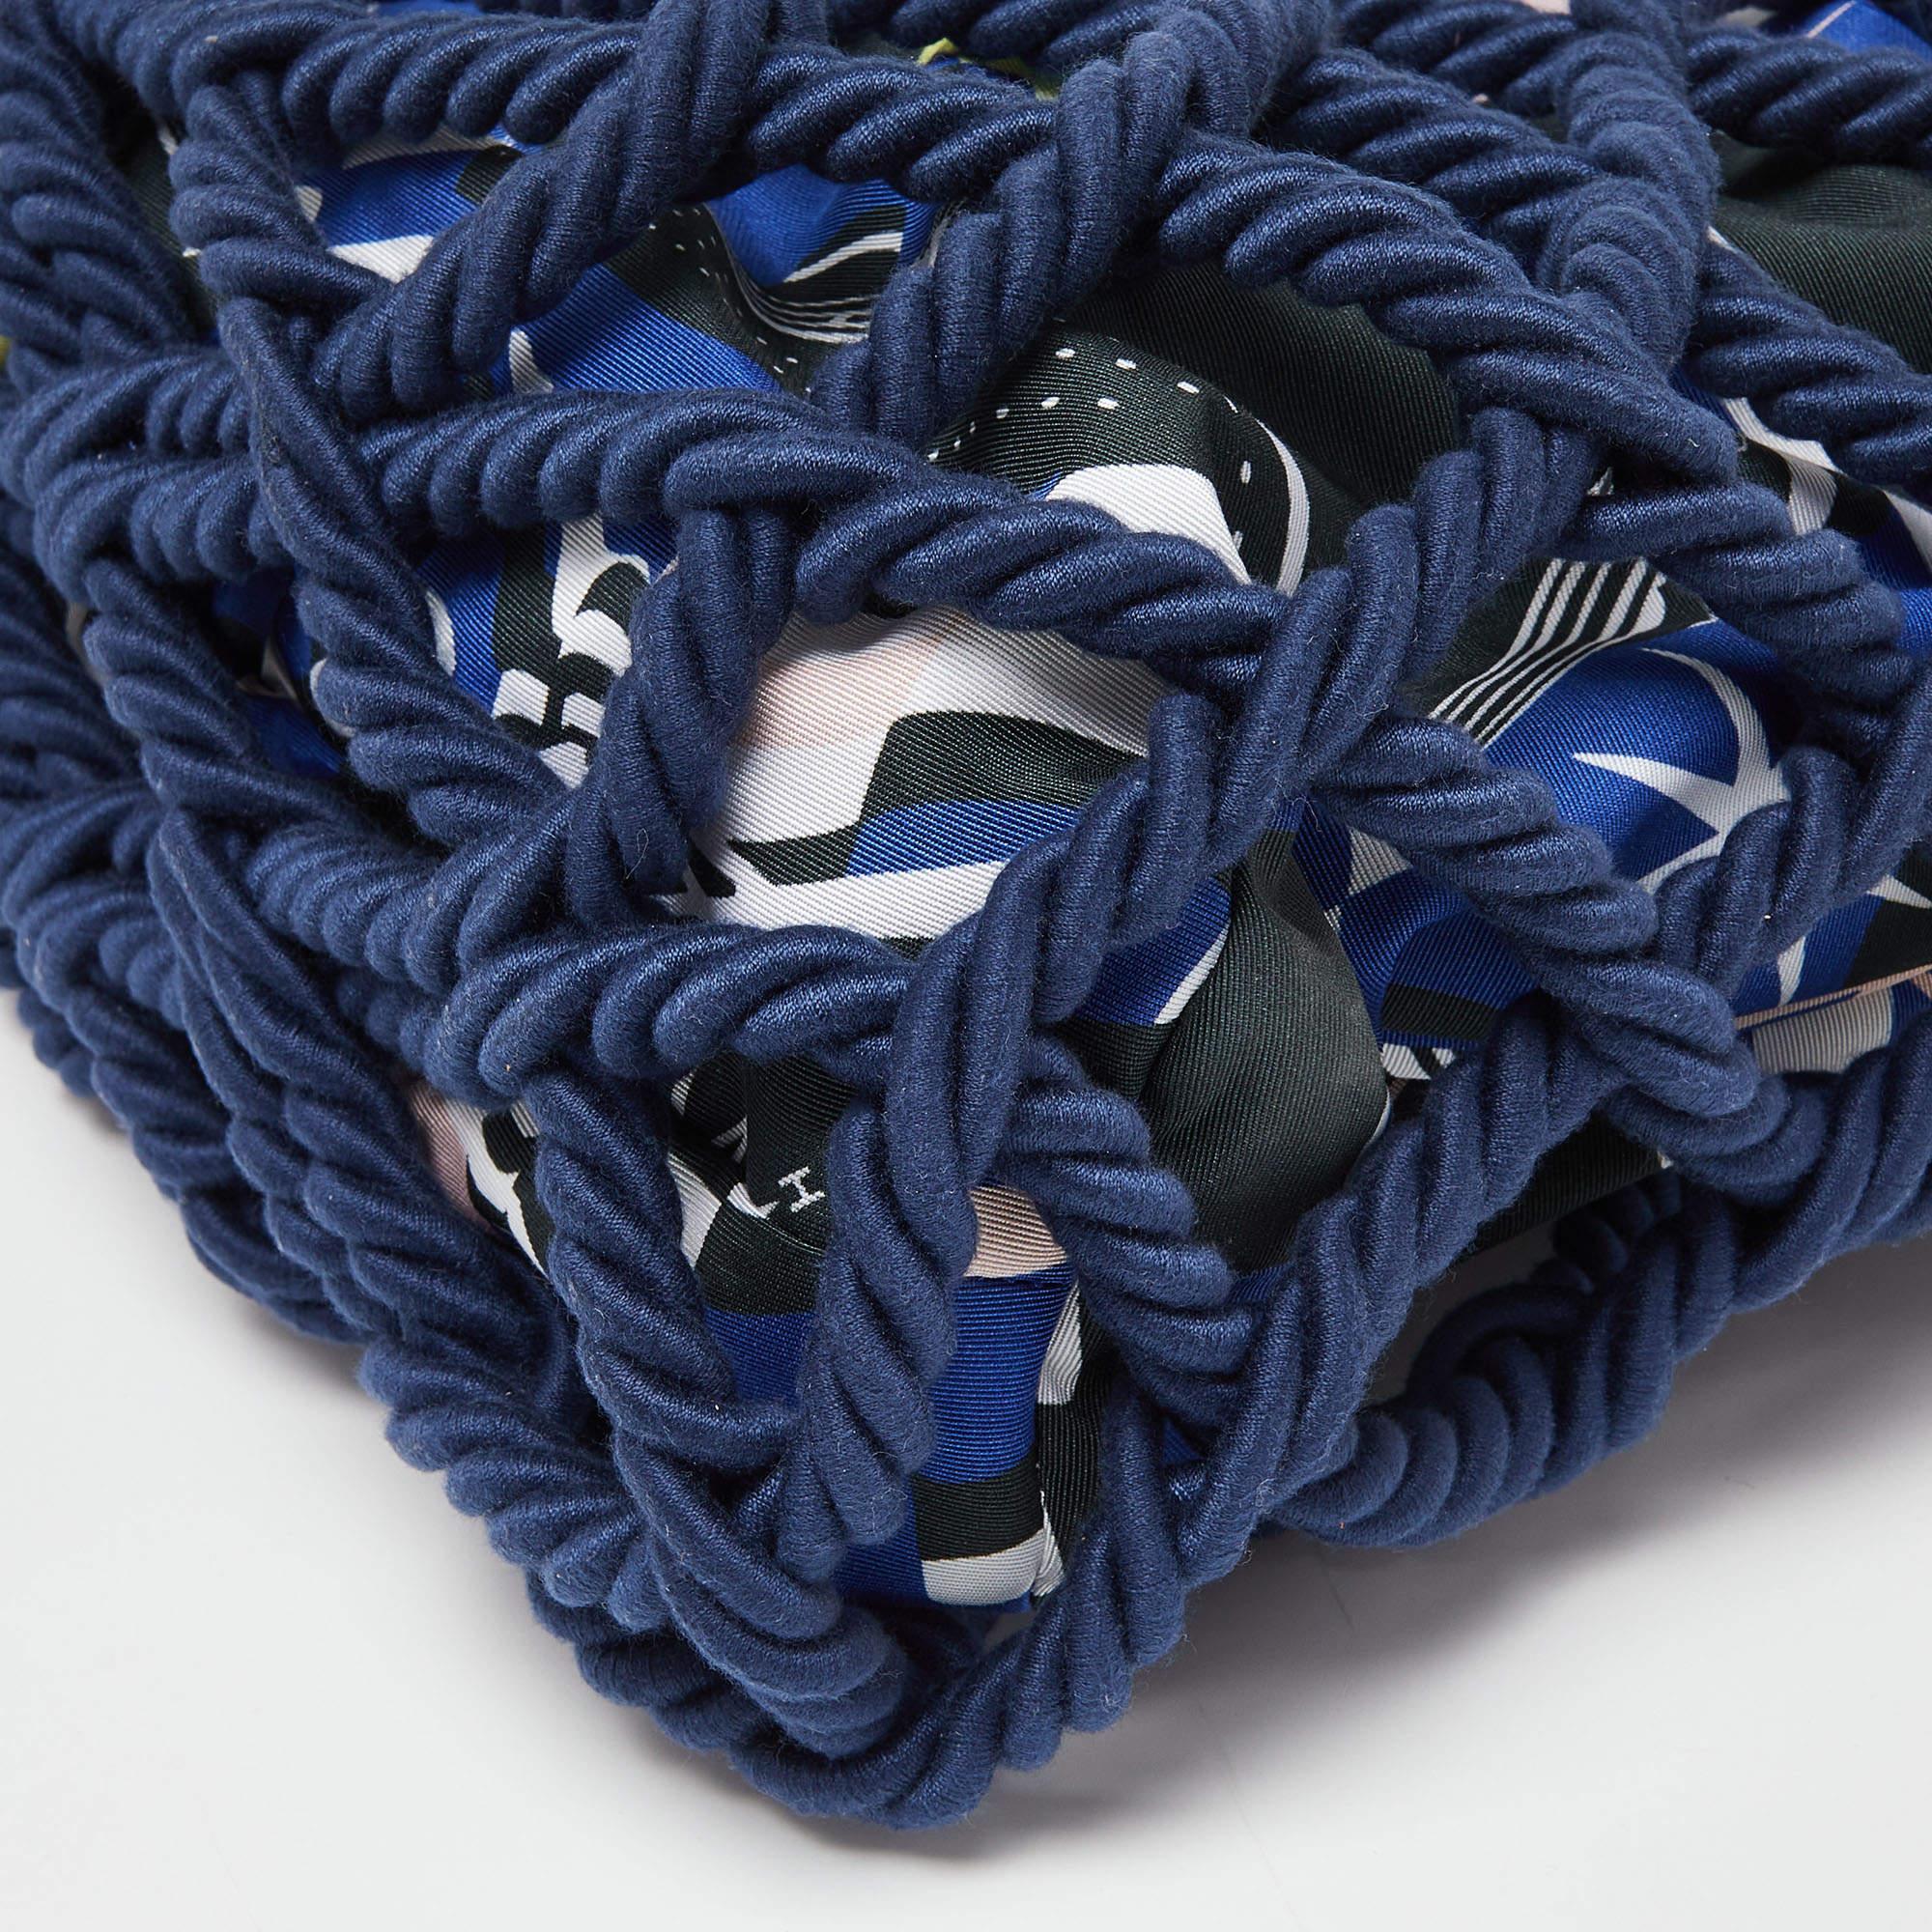 Chanel Multicolor Cotton Rope Large Shopper Tote In Good Condition For Sale In Dubai, Al Qouz 2